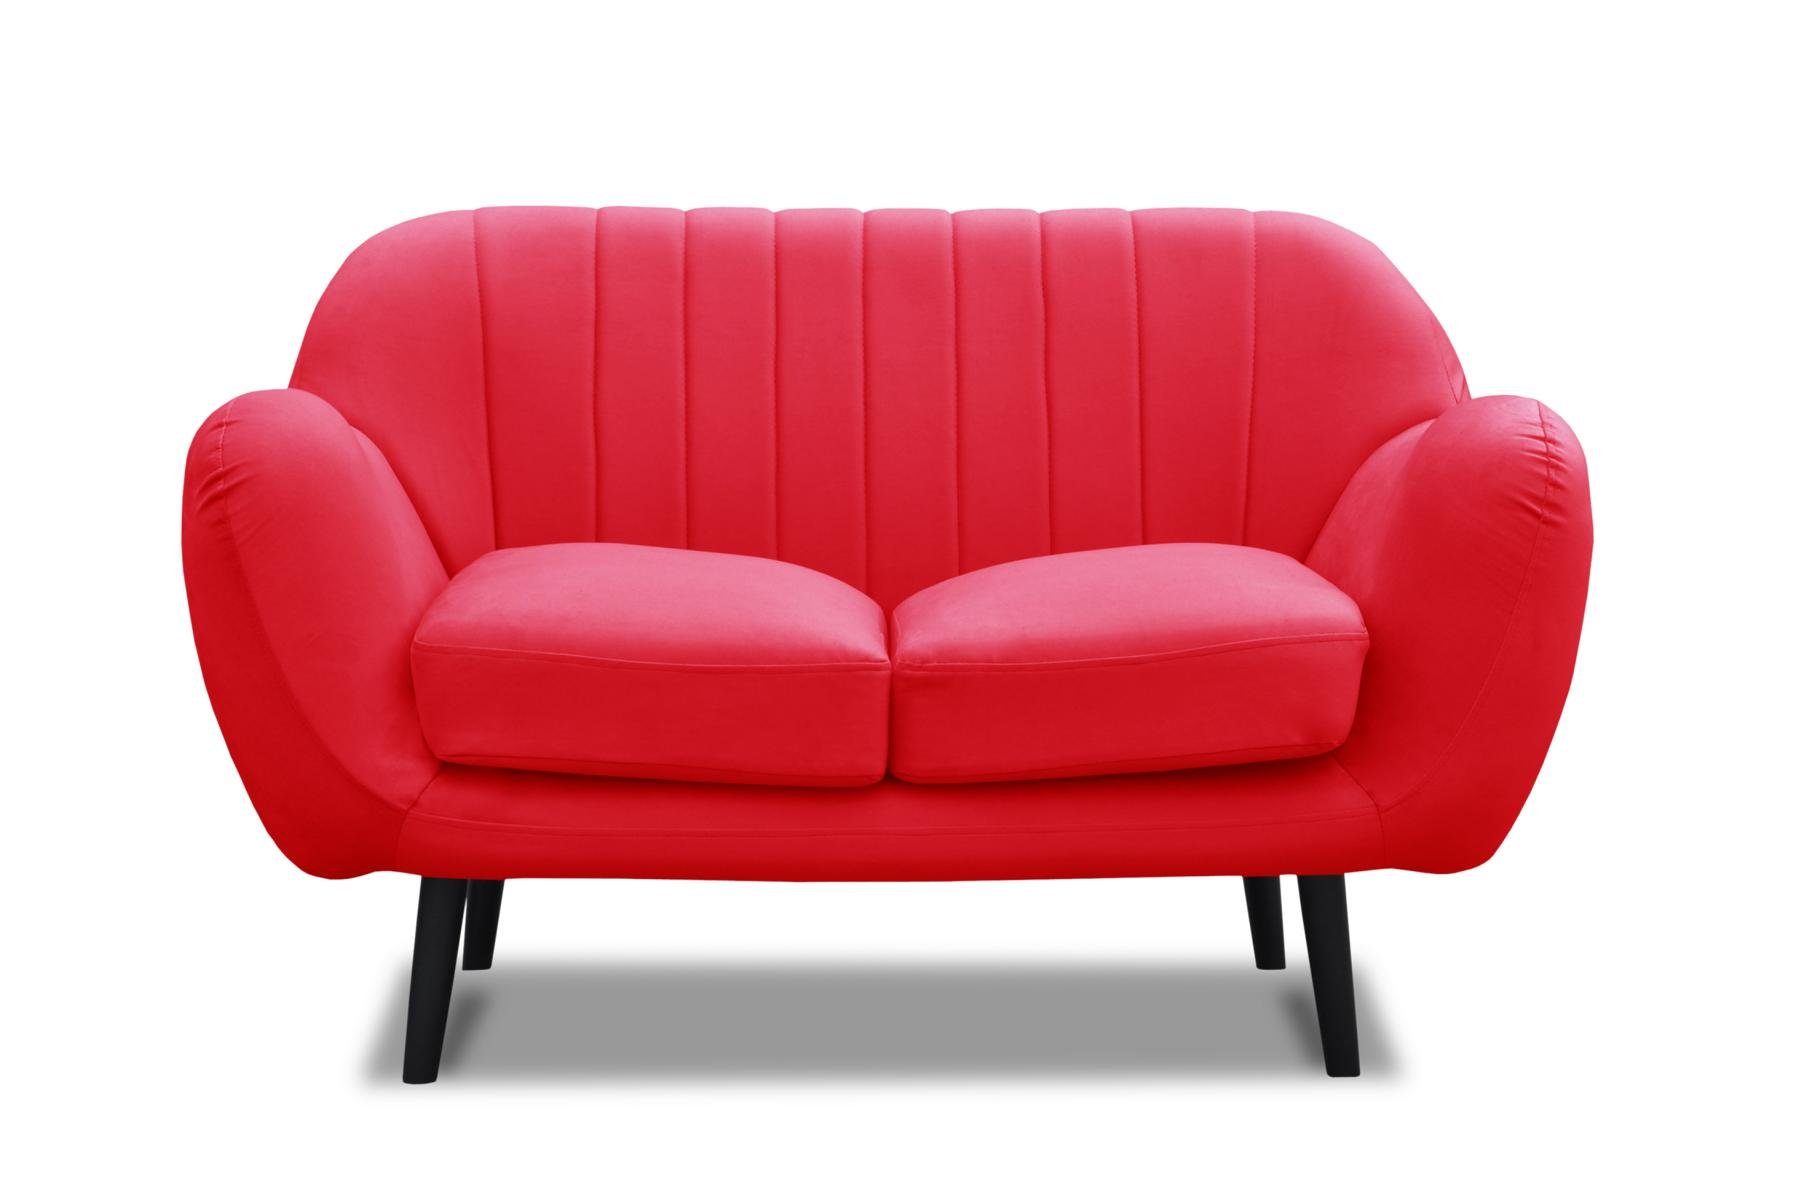 JVmoebel Sofa Moderne Zweisitzer Stoff Leder Zweisitzer Neu Couch, Made in Europe | Alle Sofas